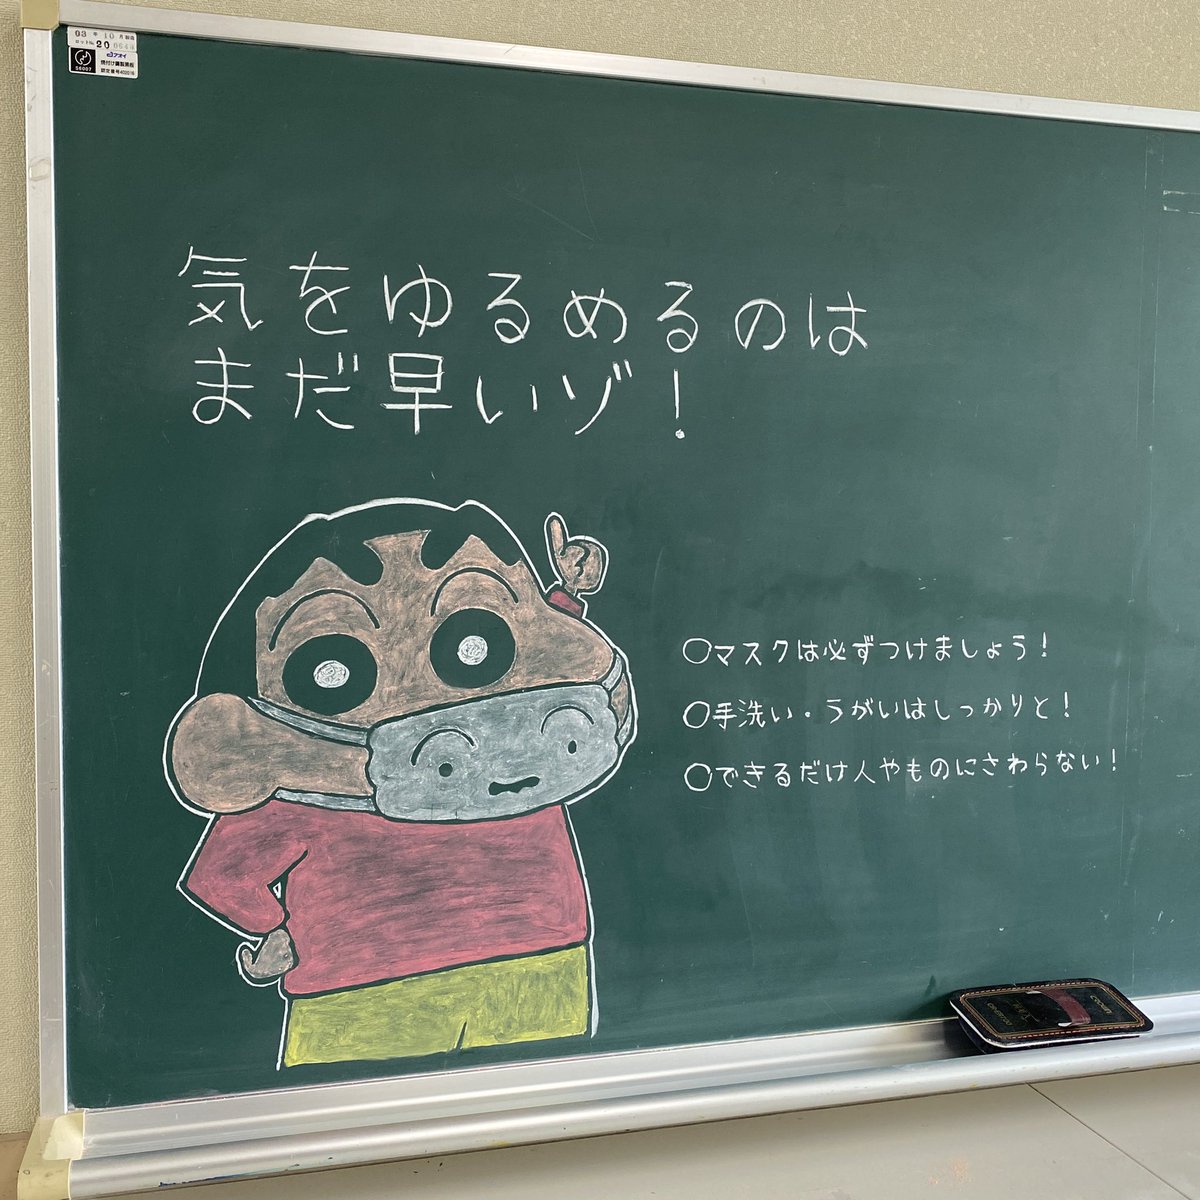 ワタセショー on twitter 大阪で小学校教師をしています 登校で気が緩みがちな子ども達への注意喚起のために シロマスクしんちゃん使わせていただきました クレヨンしんちゃん 黒板アート